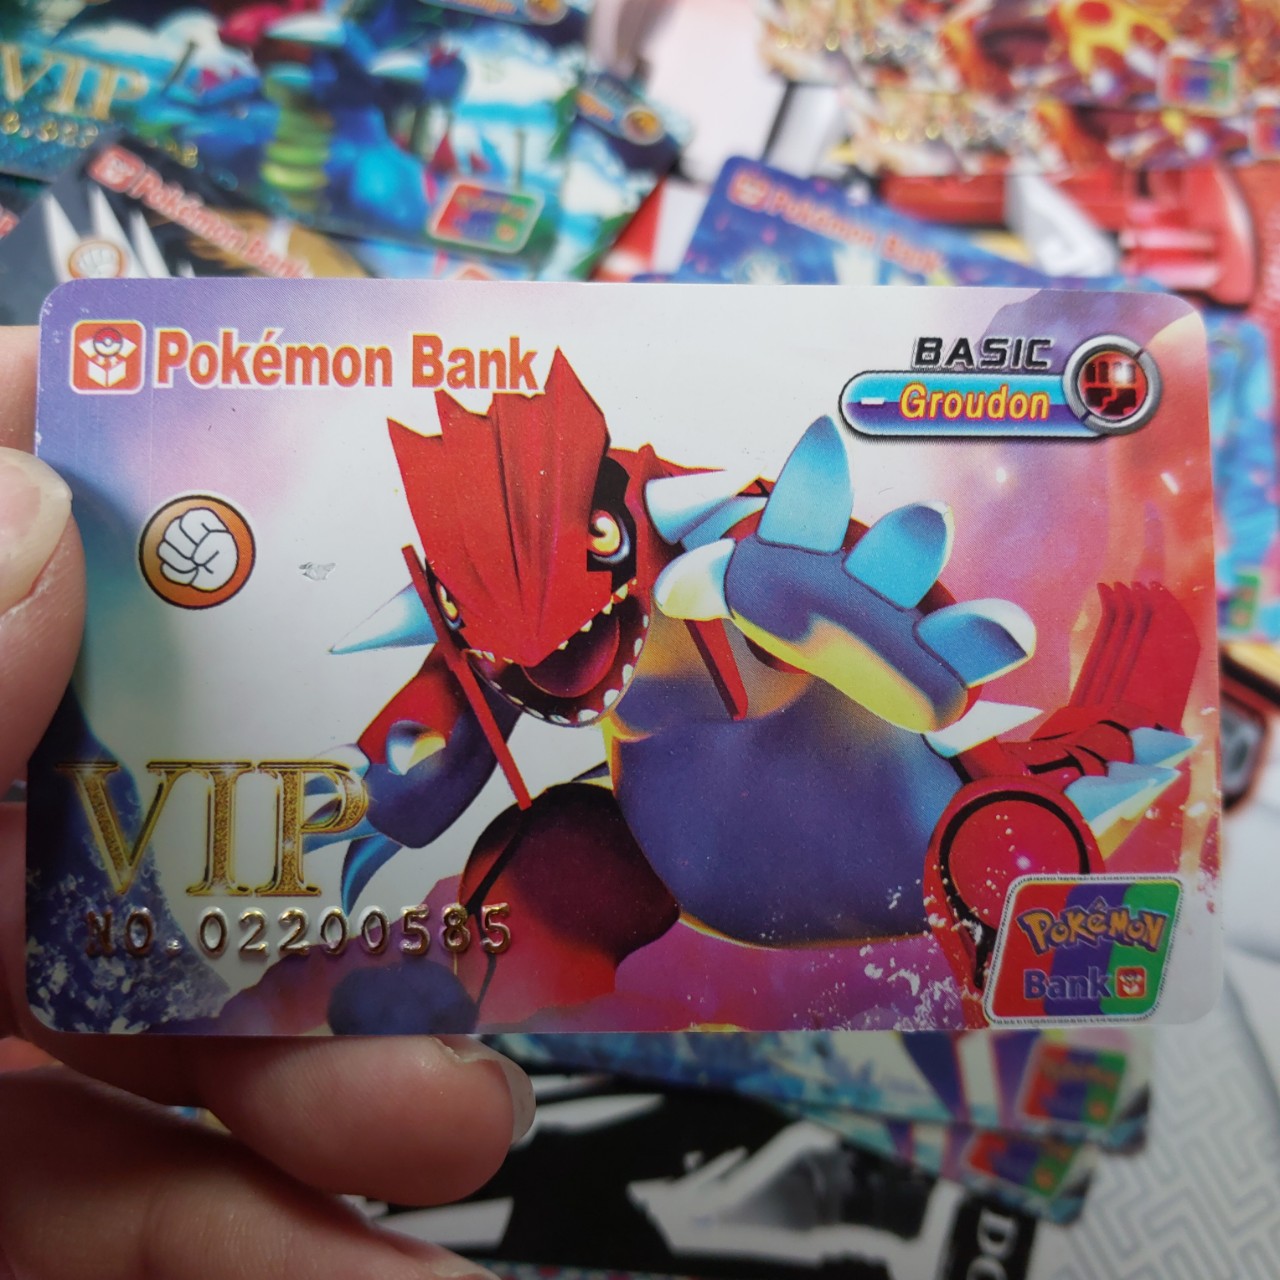 [PVC]Thẻ Pokemon Mica Bank Groudon truyền thuyết dung nham ATM lớn 1459 d39 6